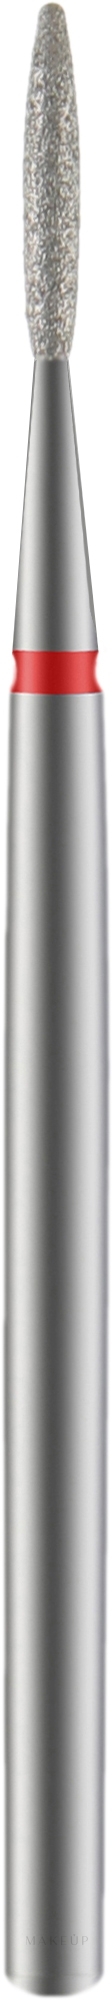 Diamantfräser Flame rot Durchmesser 1,4 mm Arbeitsteil 8 mm - Staleks Pro — Bild 1 St.